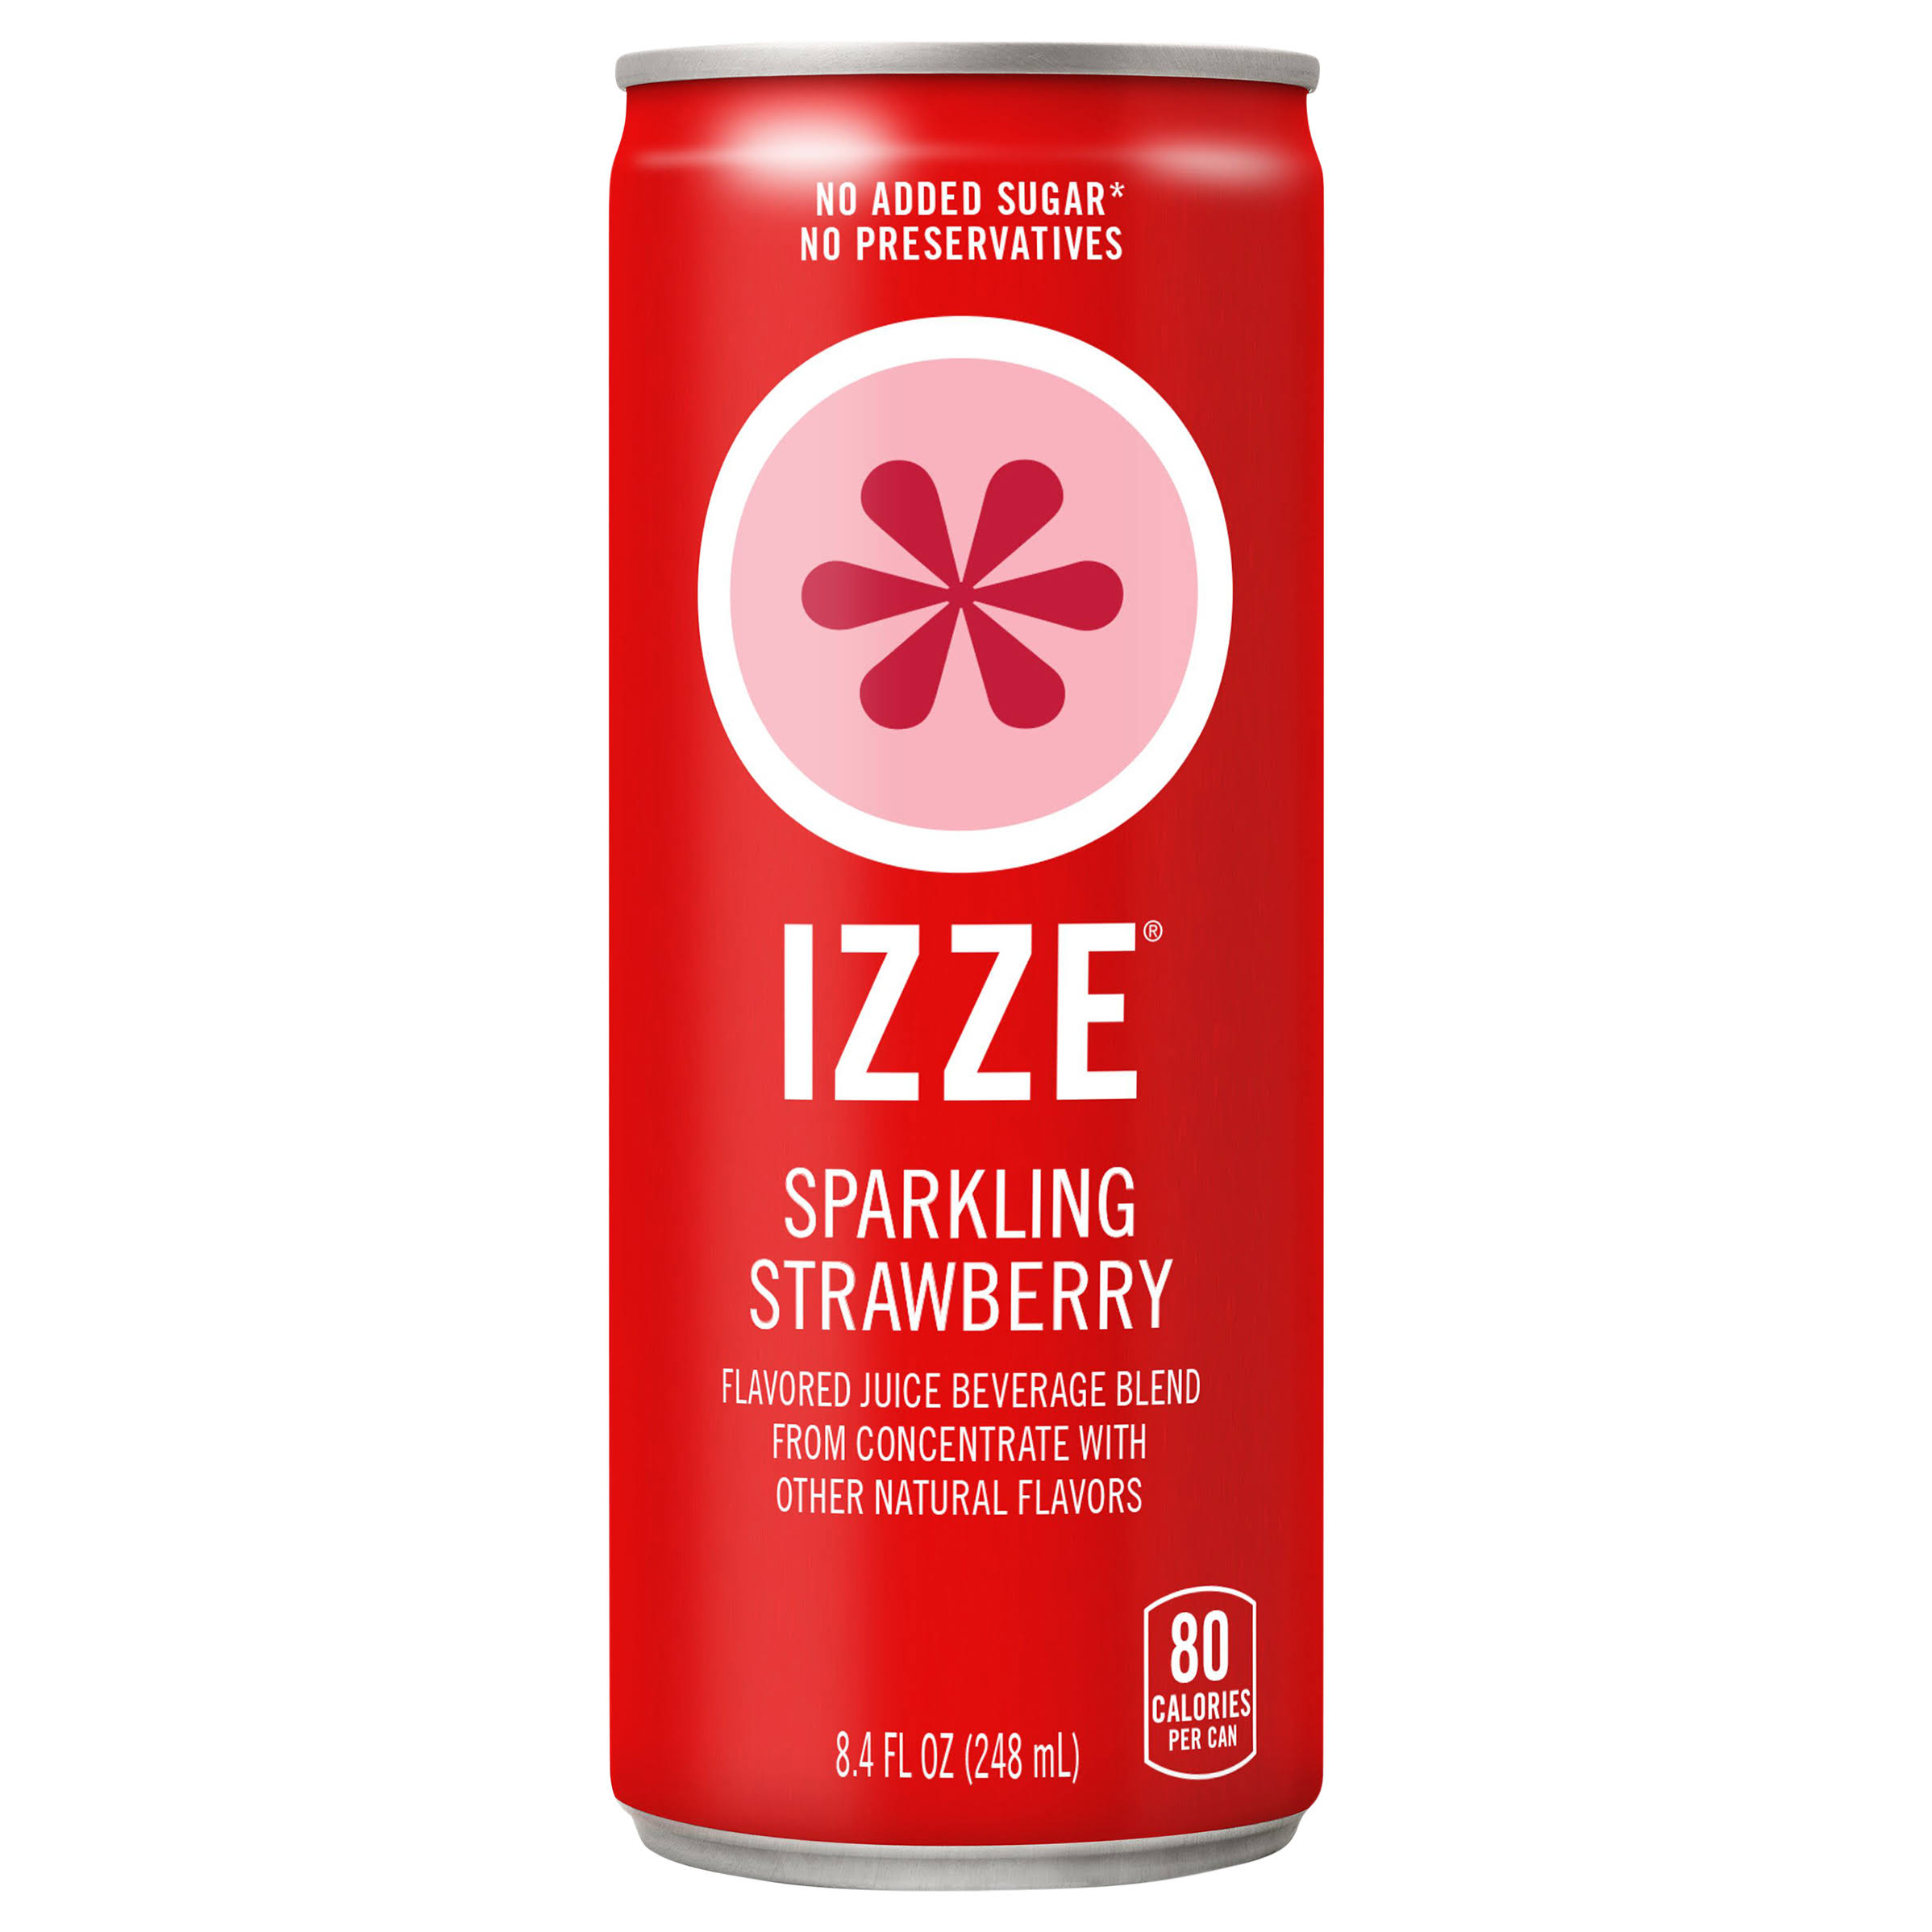 Izze Juice Beverage Blend, Sparkling Strawberry - 8.4 fl oz